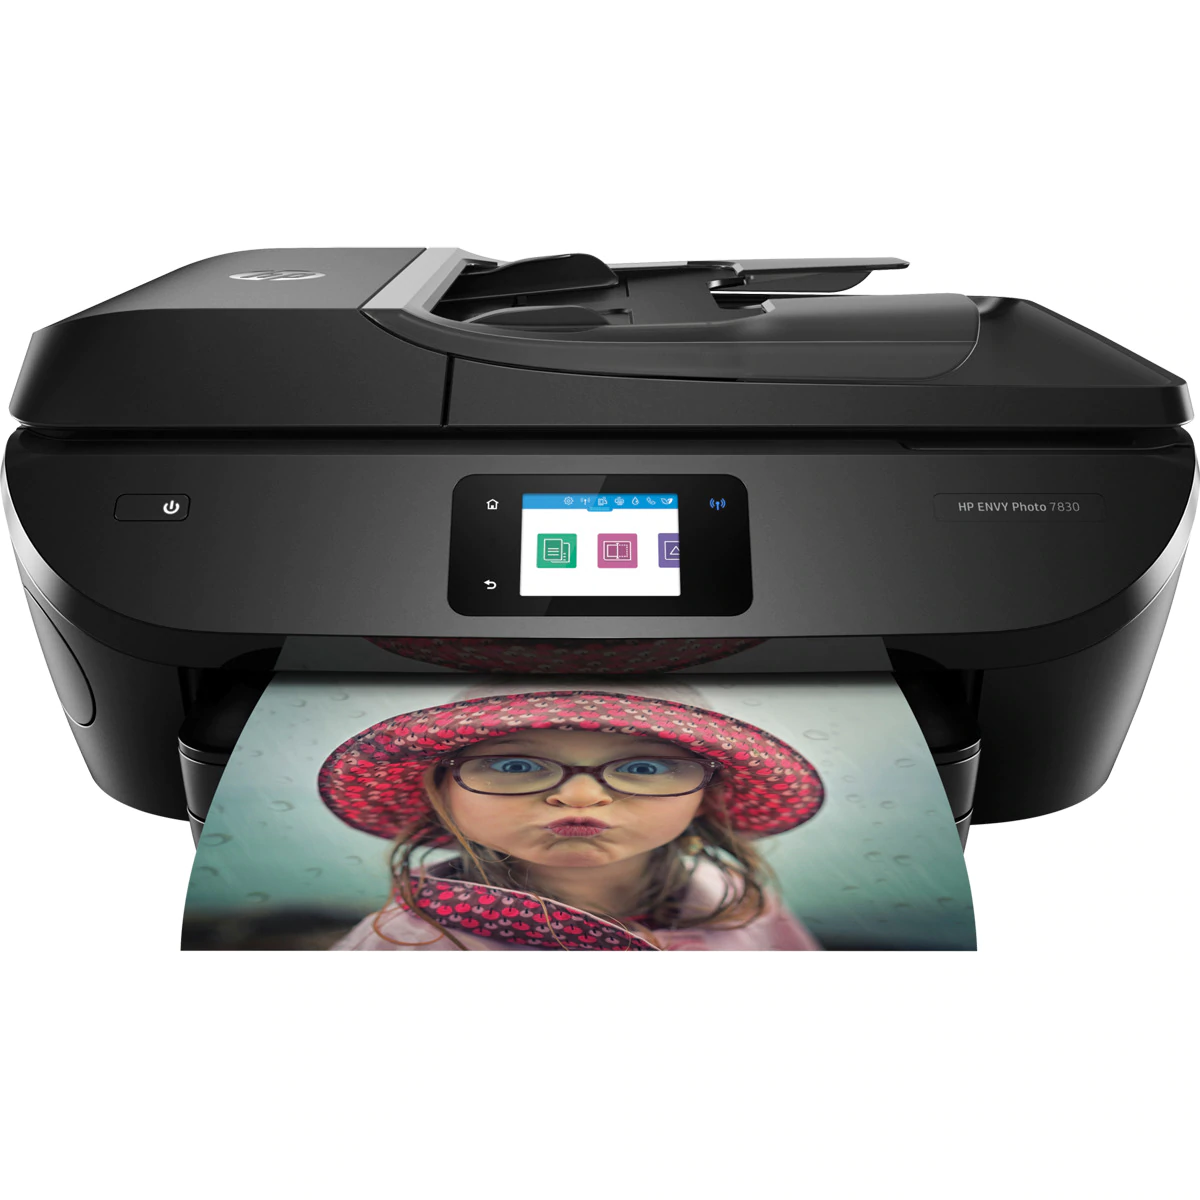 Impresora multifunción tinta HP ENVY Photo 7830, Fax, Wi-Fi, Ethernet, compatible con Instant Ink